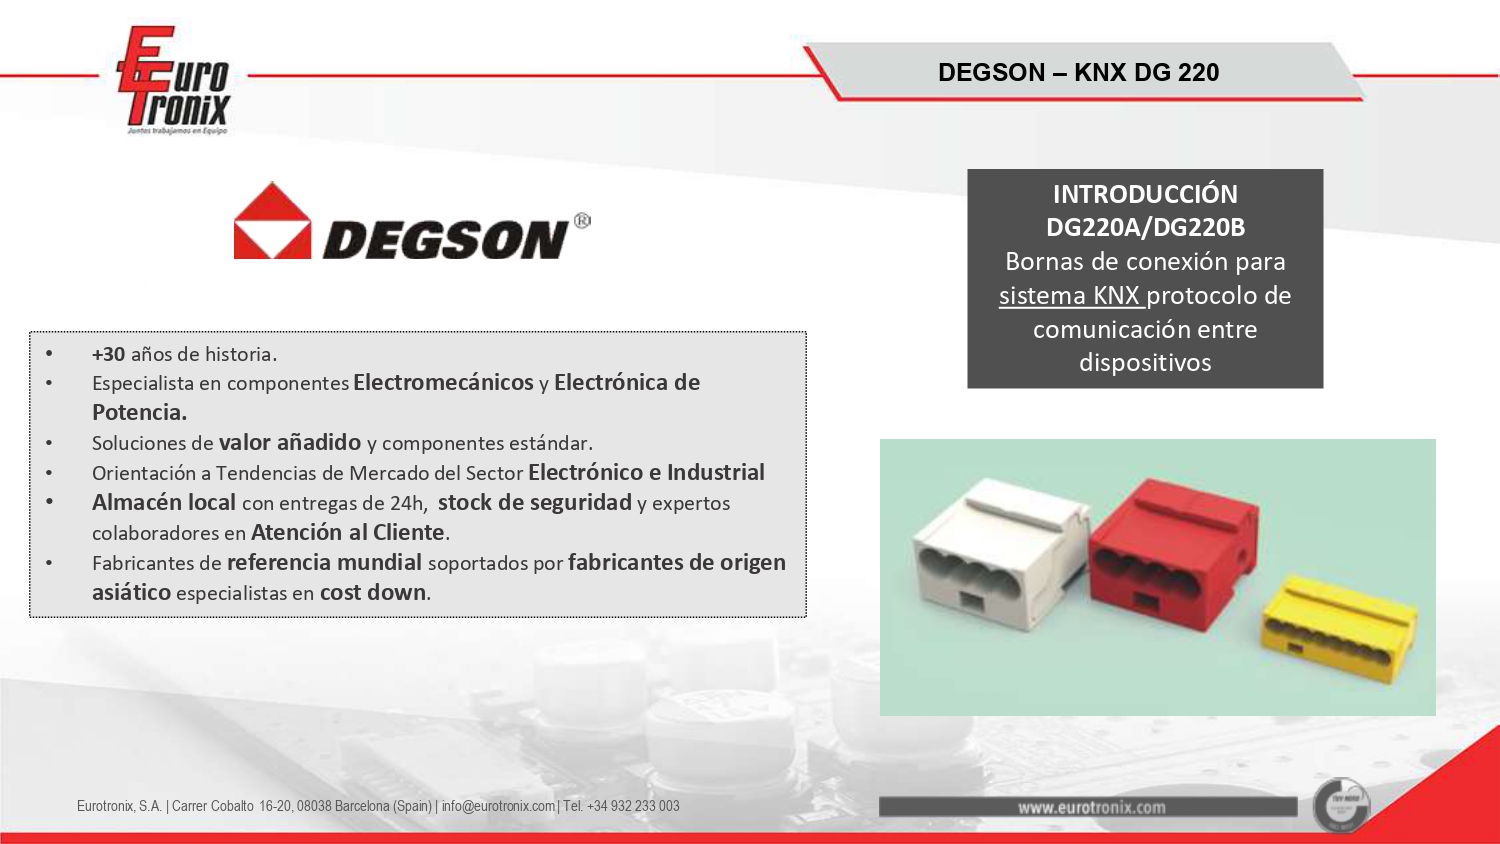 DG220A/DG220B - Bornas de conexión para sistema KNX